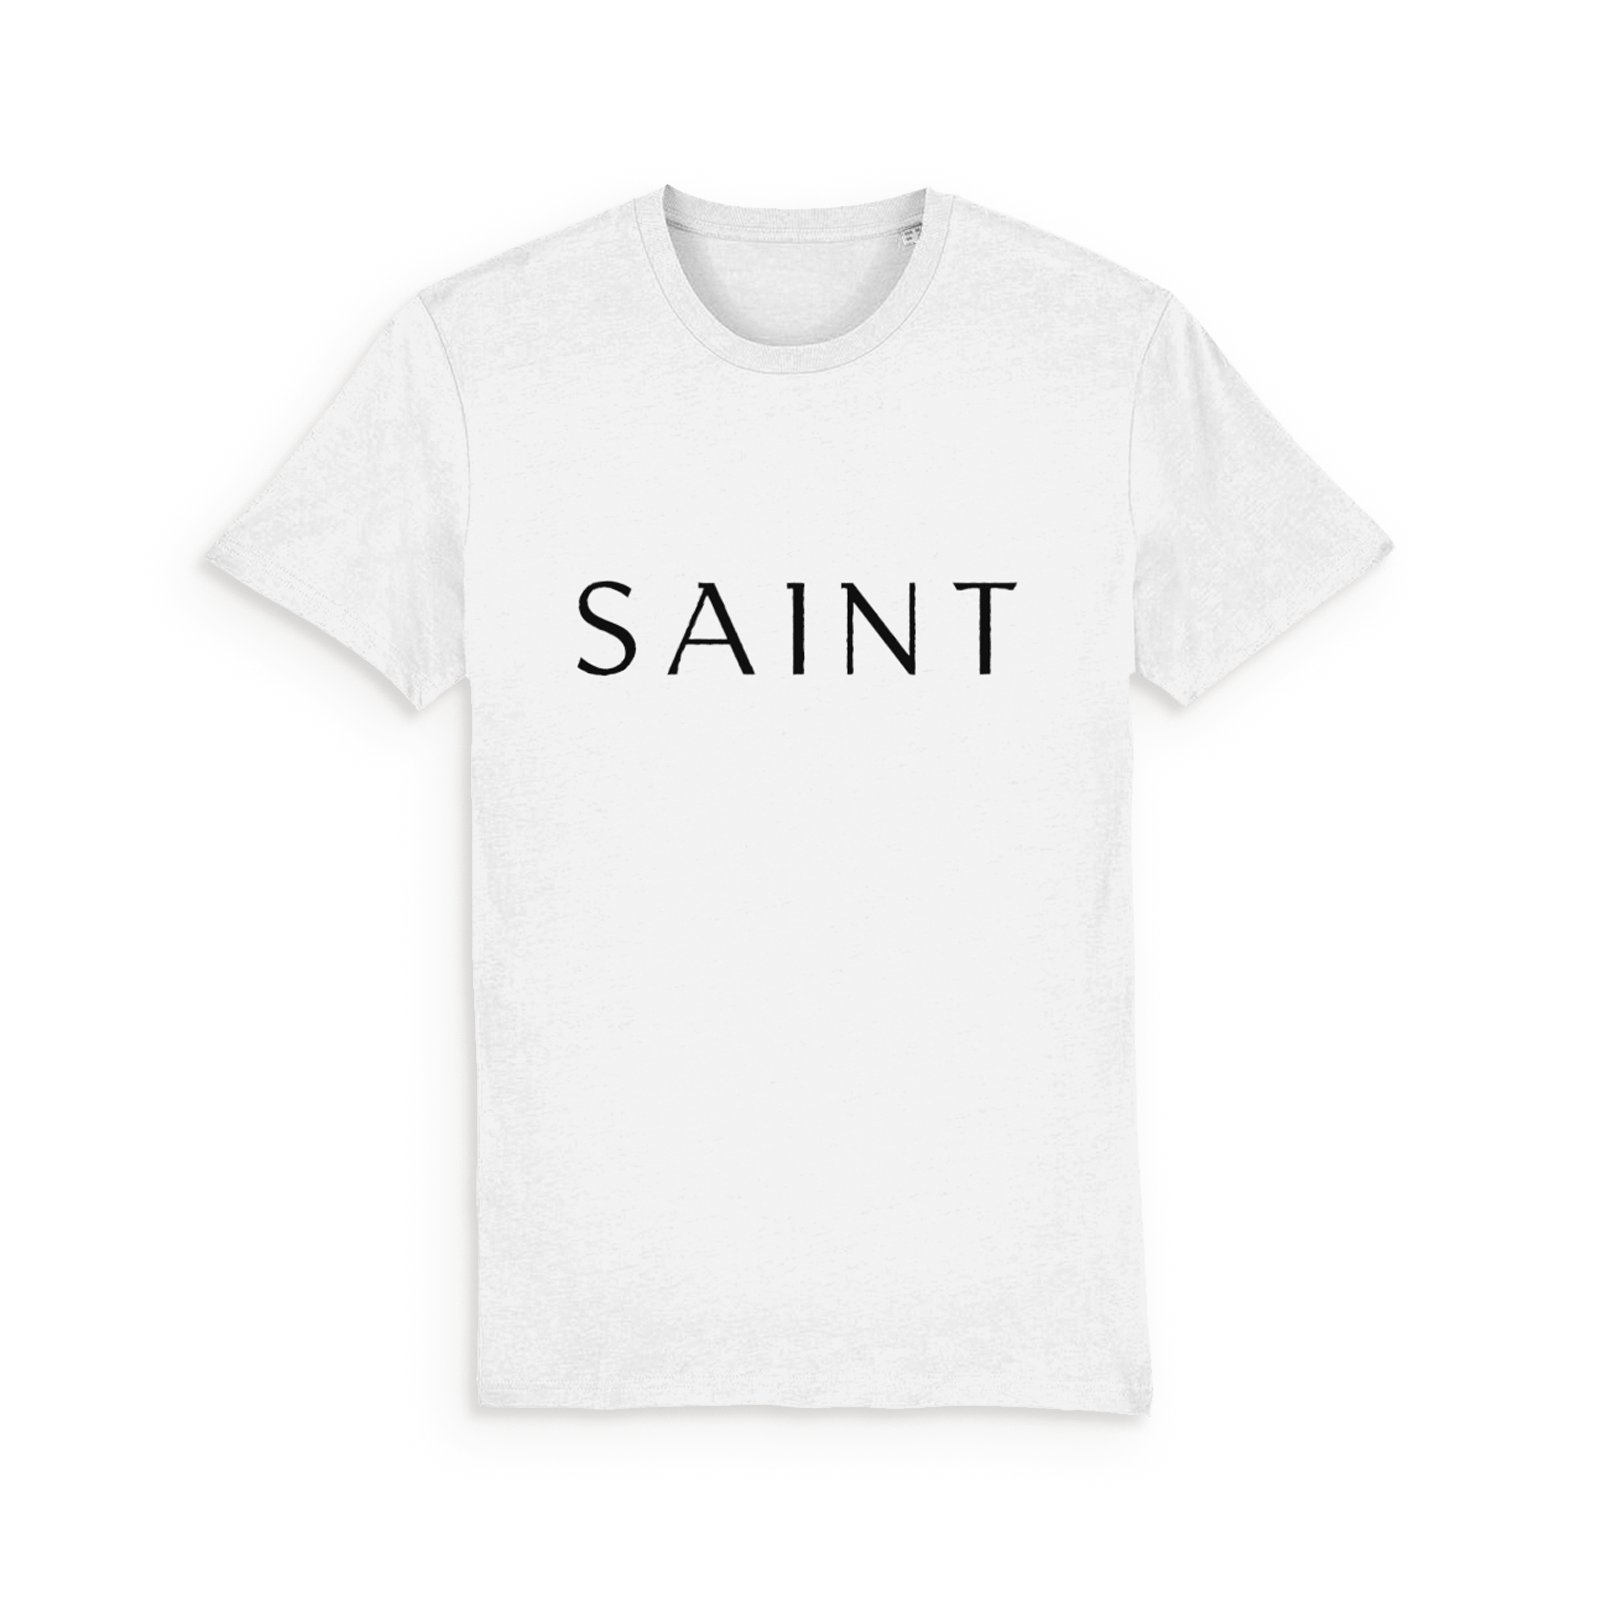 T-shirt for Saints